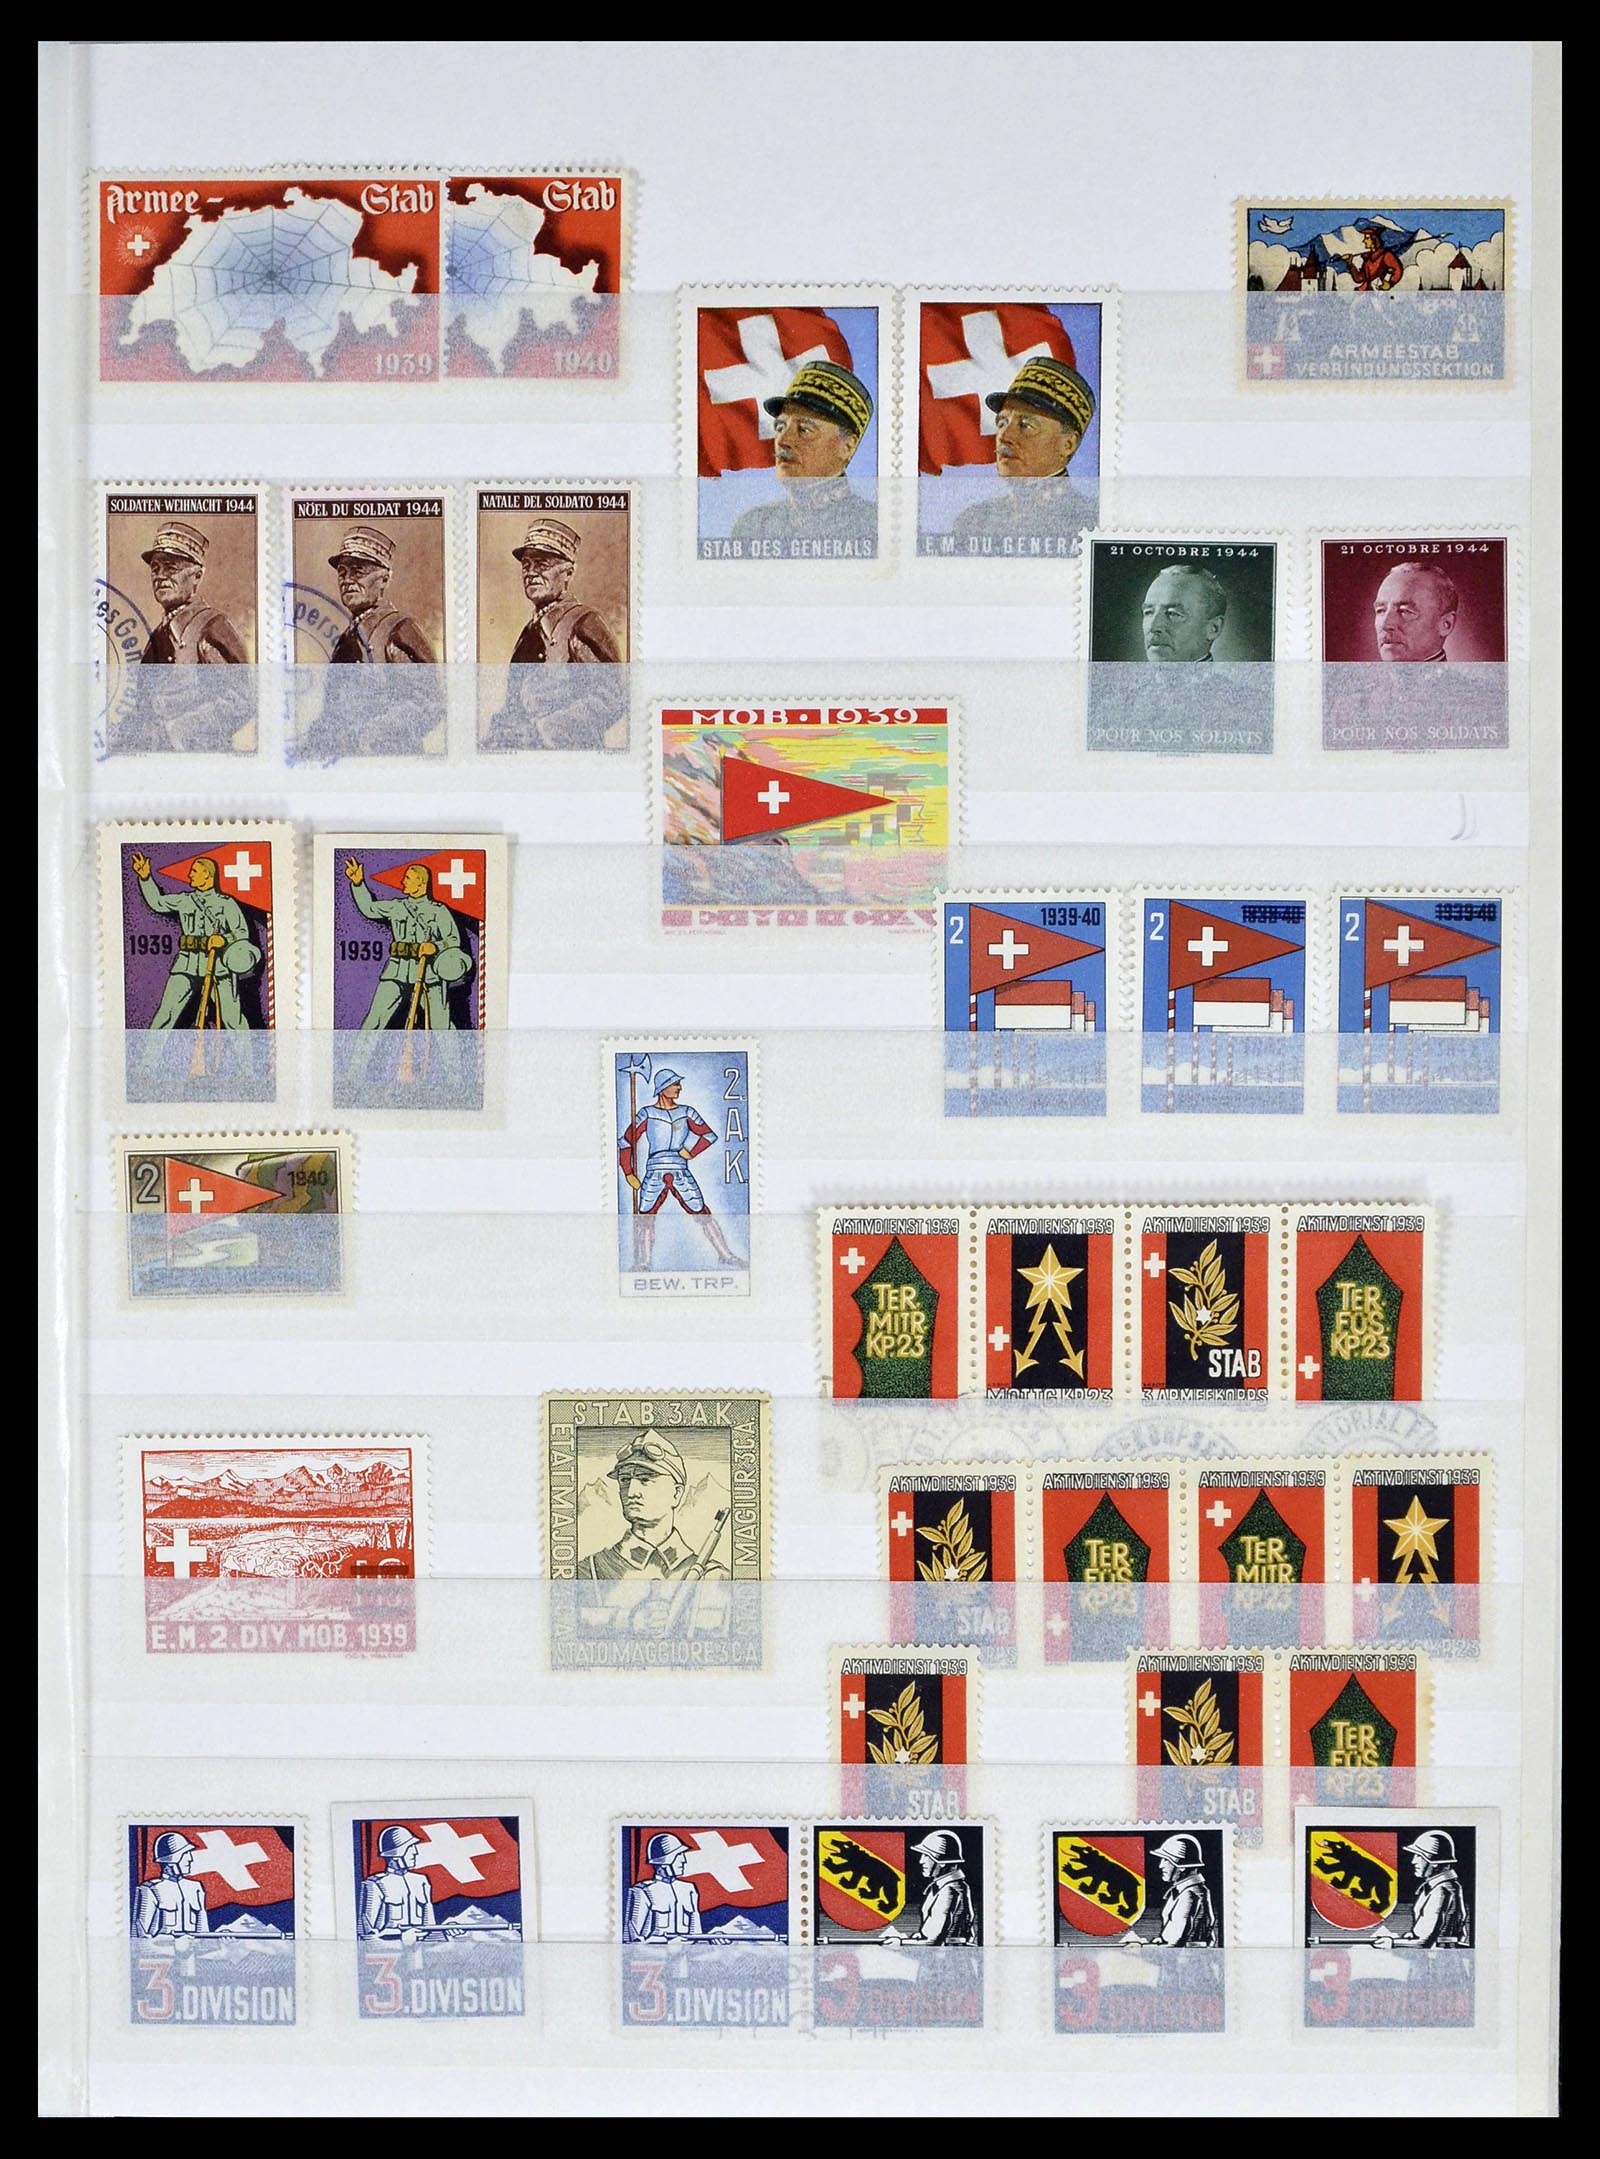 38695 0009 - Stamp collection 38695 Switzerland soldierstamps 1914-1945.